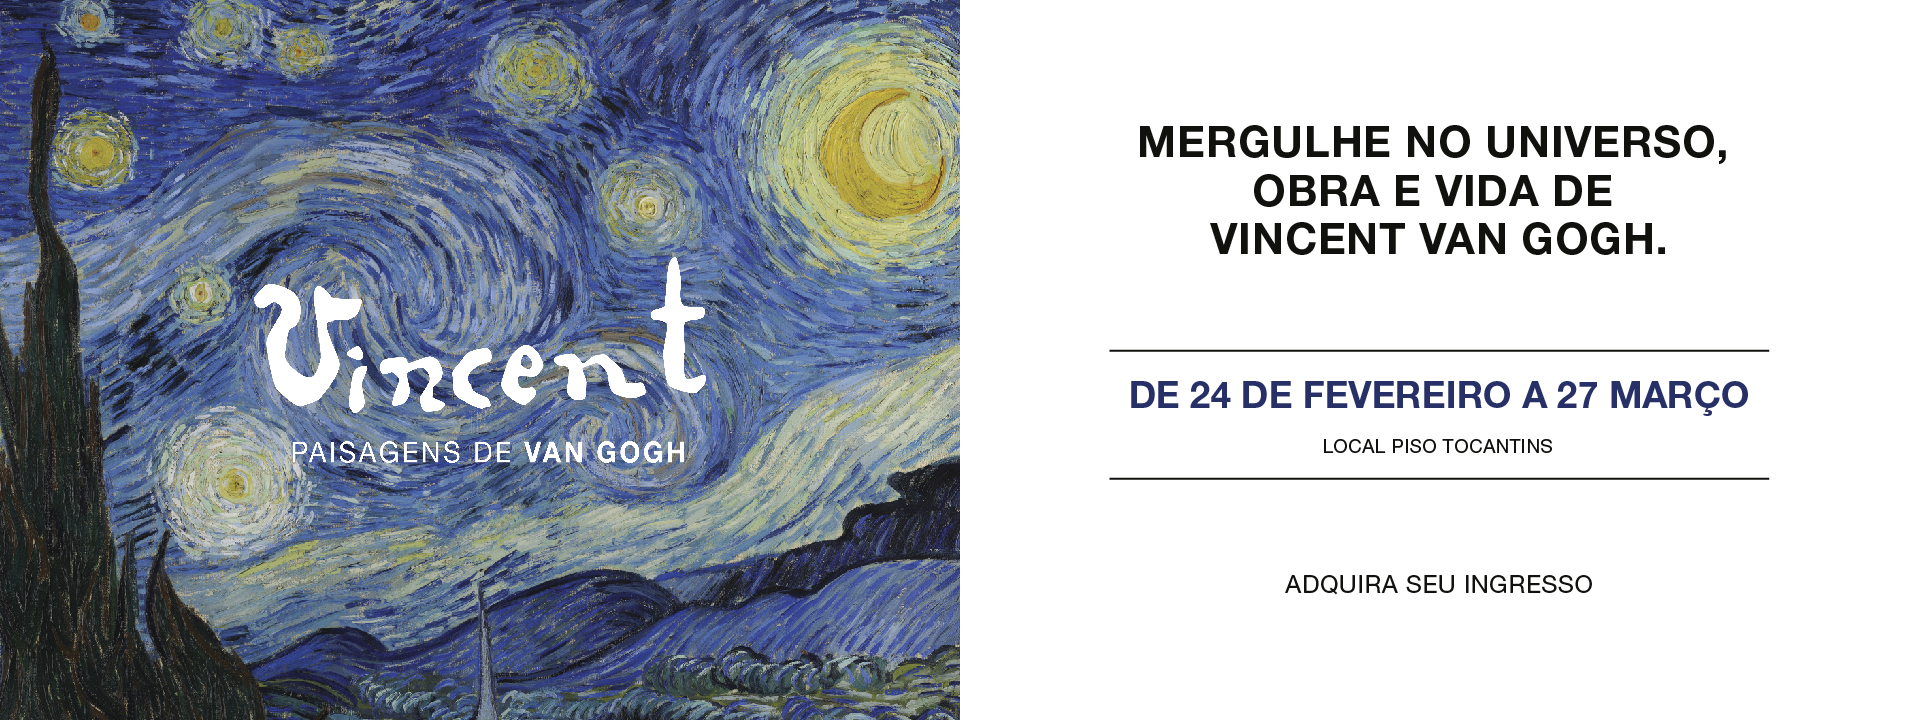 Paisagens de Van Gogh, Exposição Imersiva